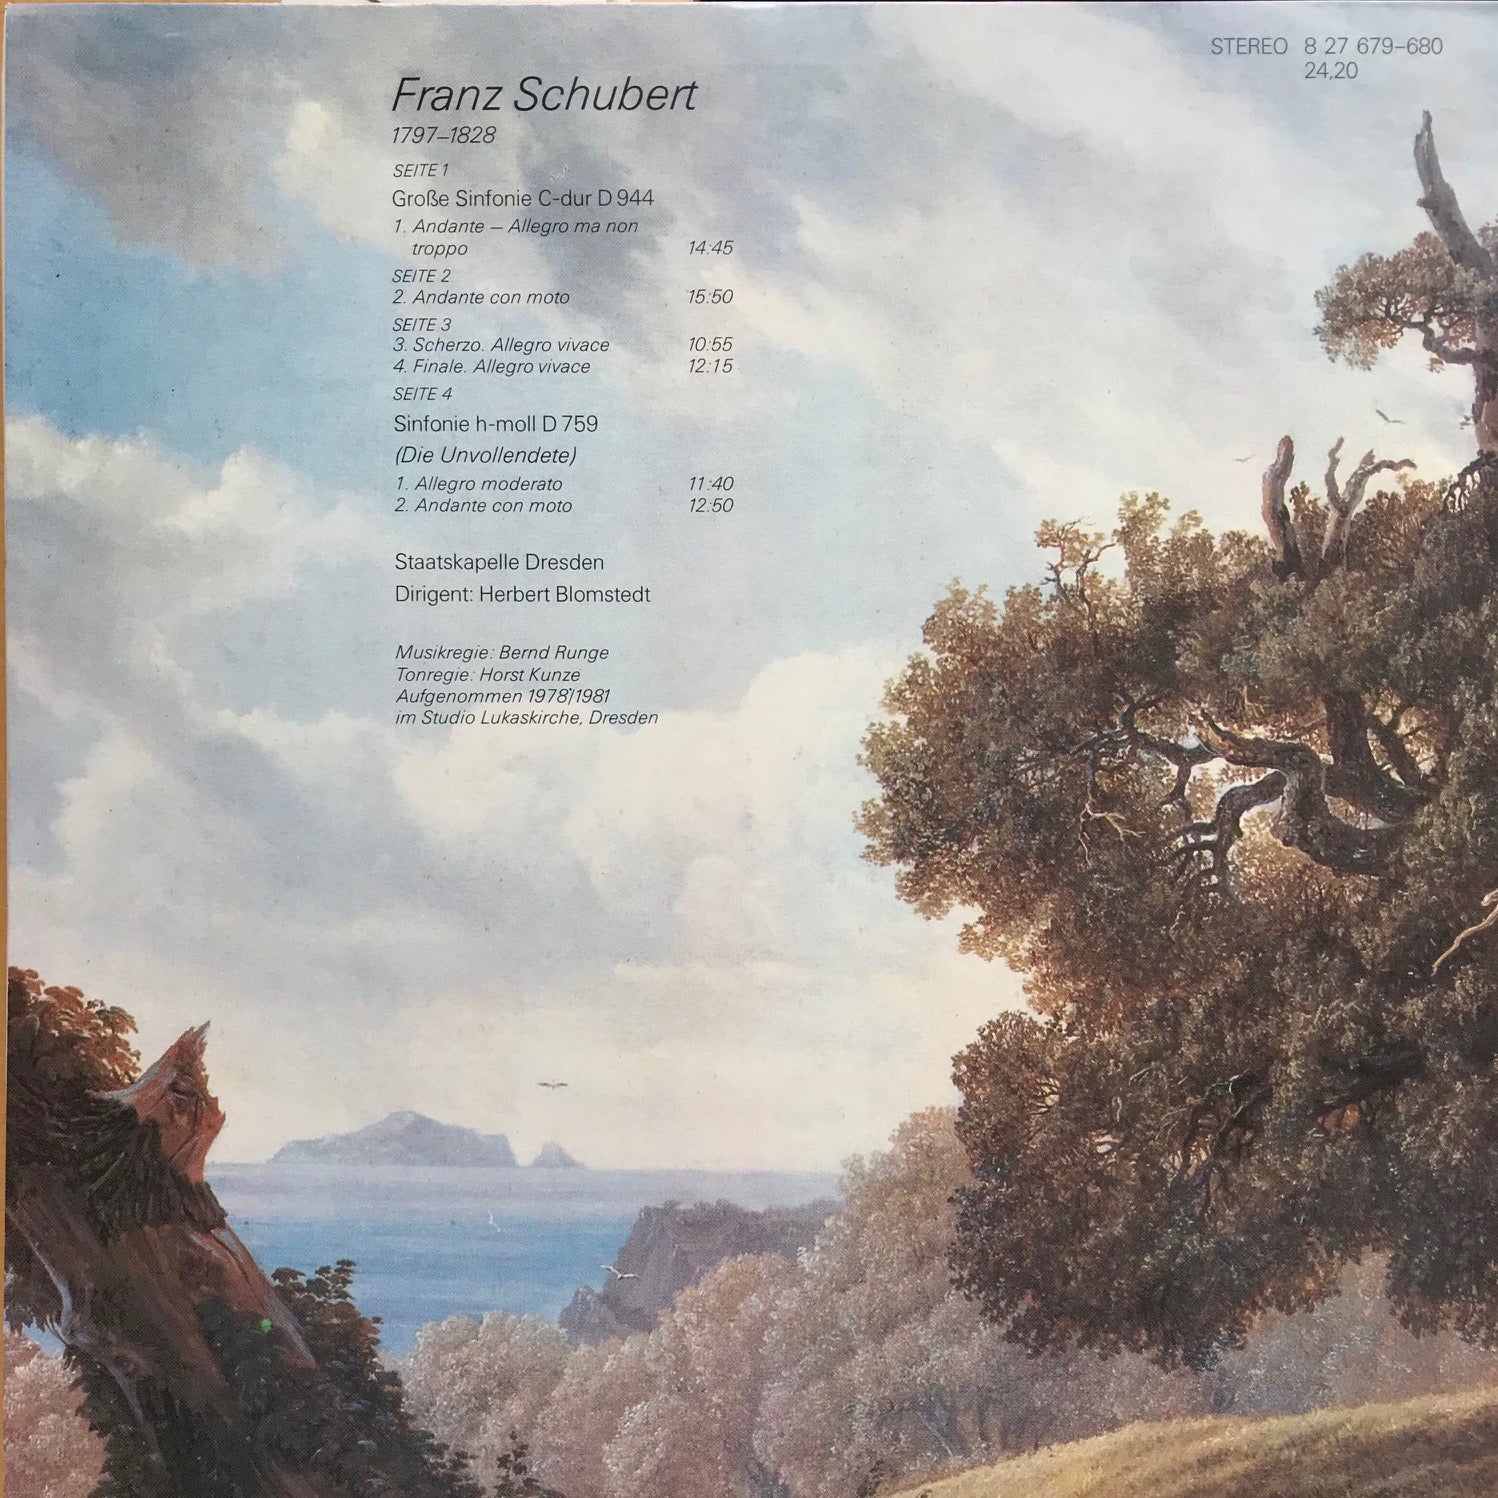 Schubert; Sinfonie C-dur "die Große"  Sinfonie h-moll "Die Unvollendete"